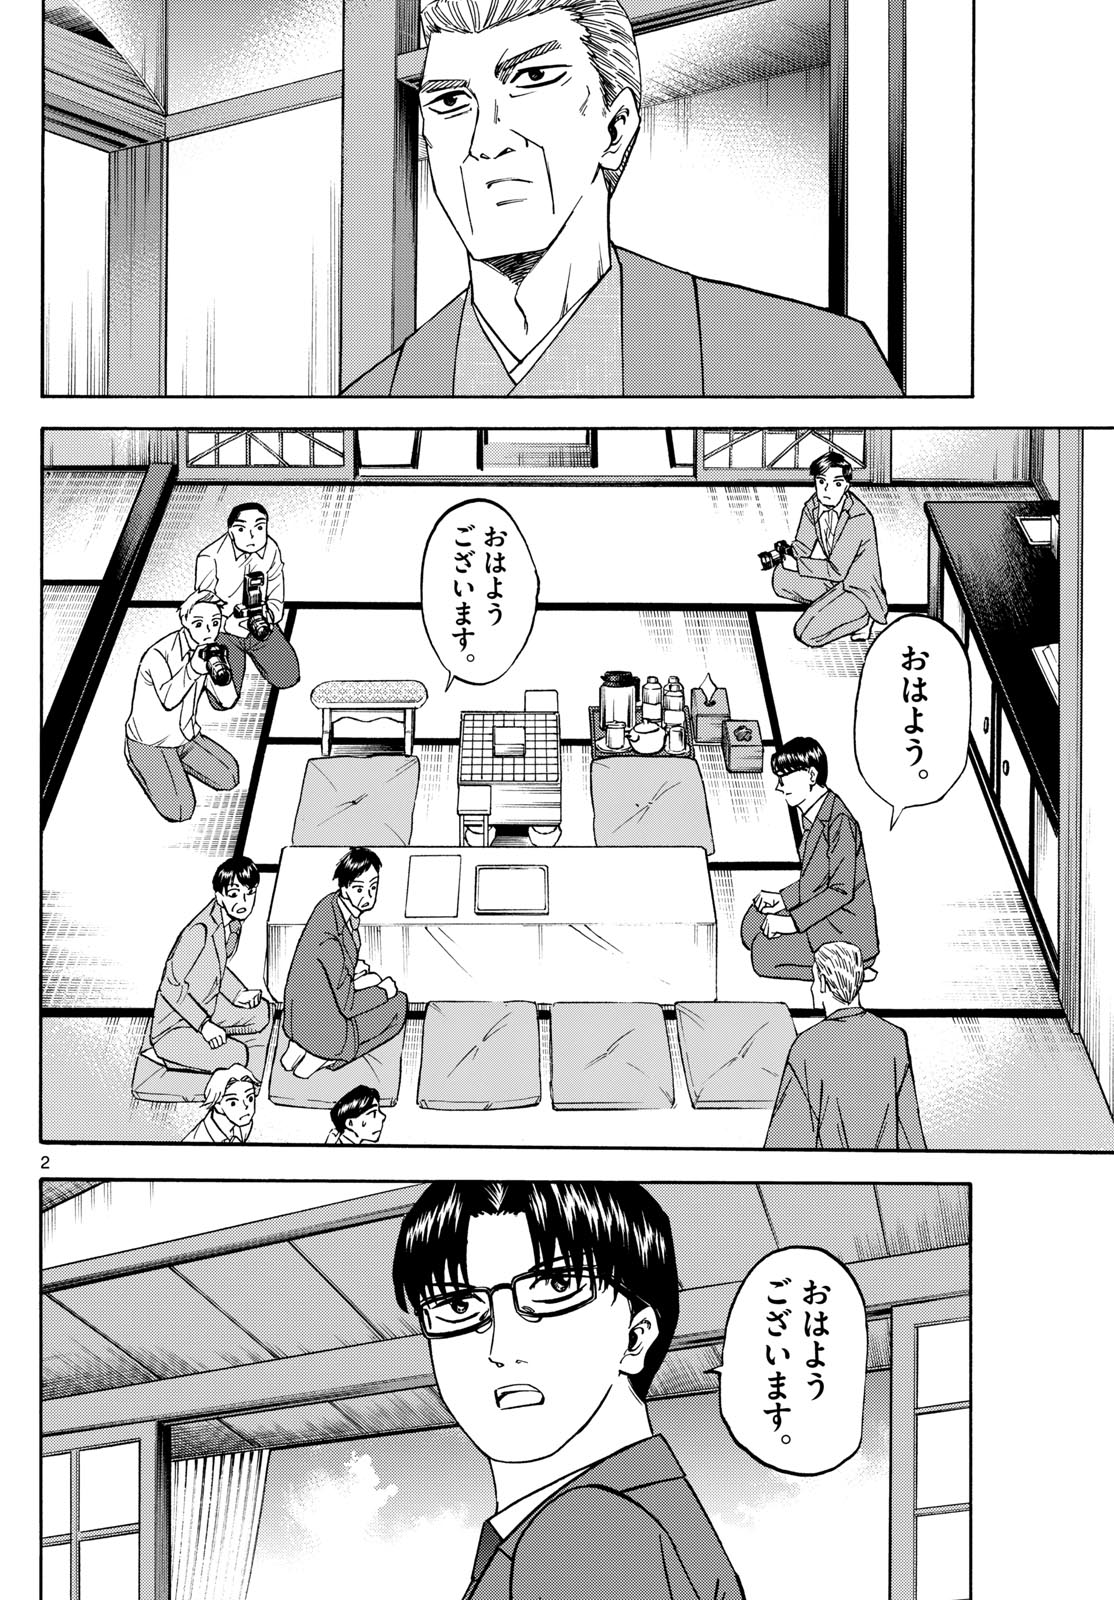 Tatsu to Ichigo - Chapter 175 - Page 2